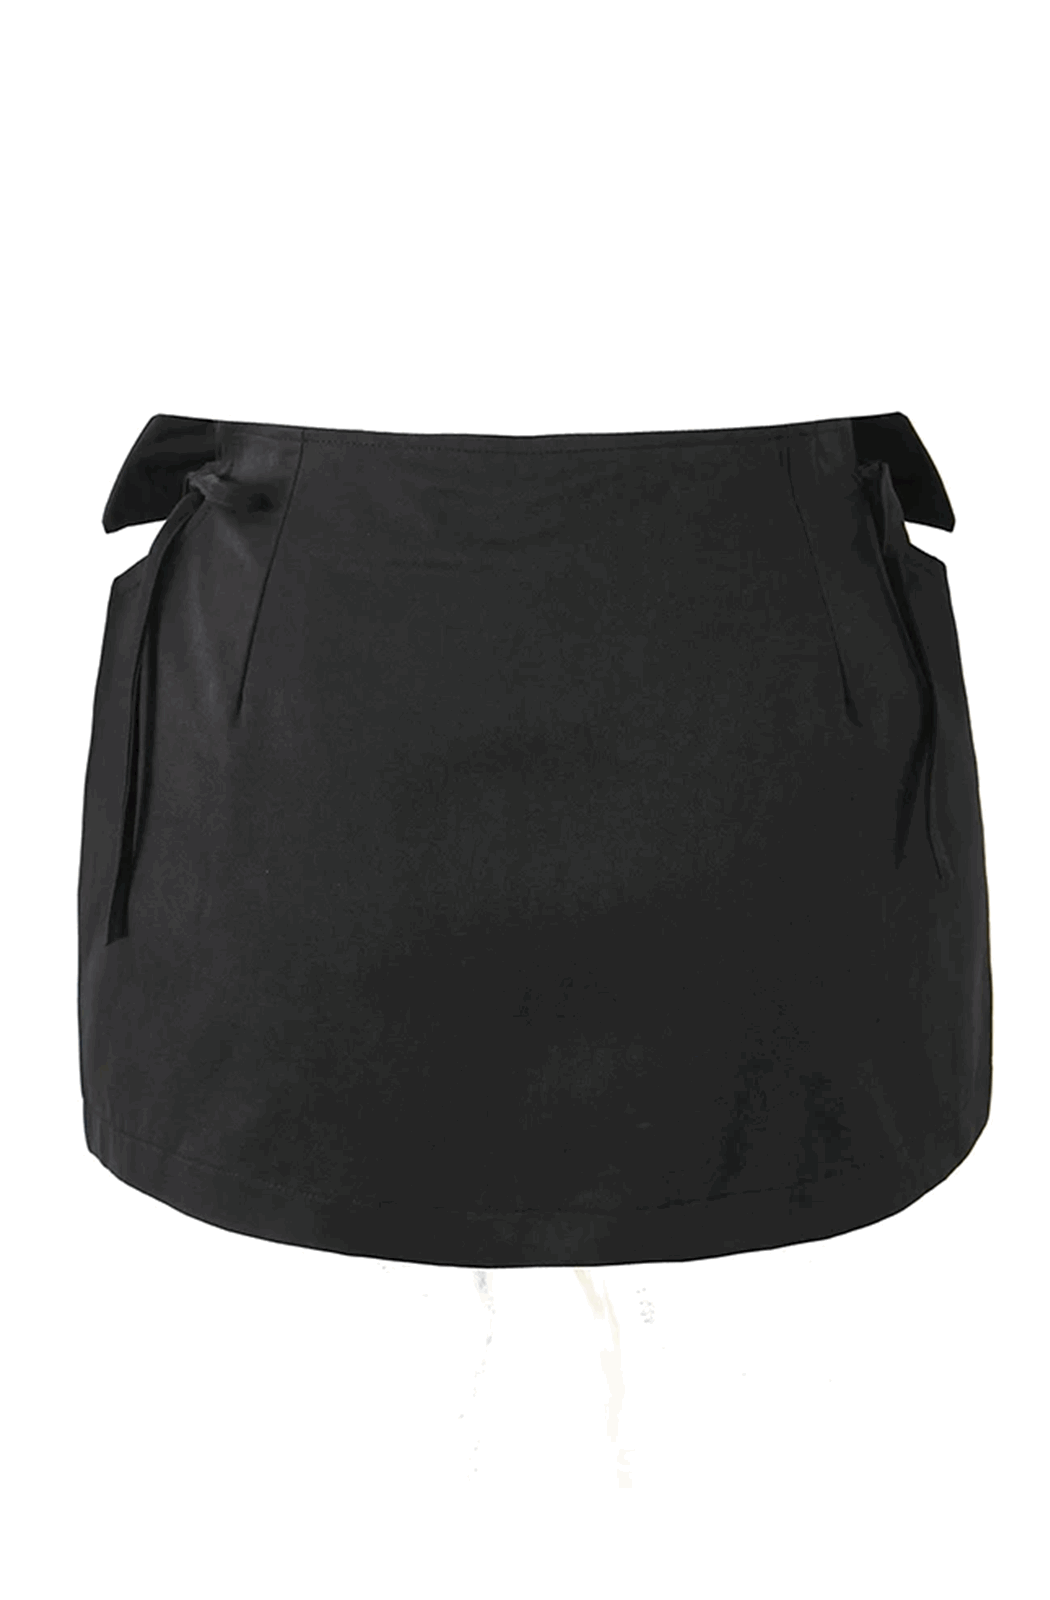 Black bow knot skirt